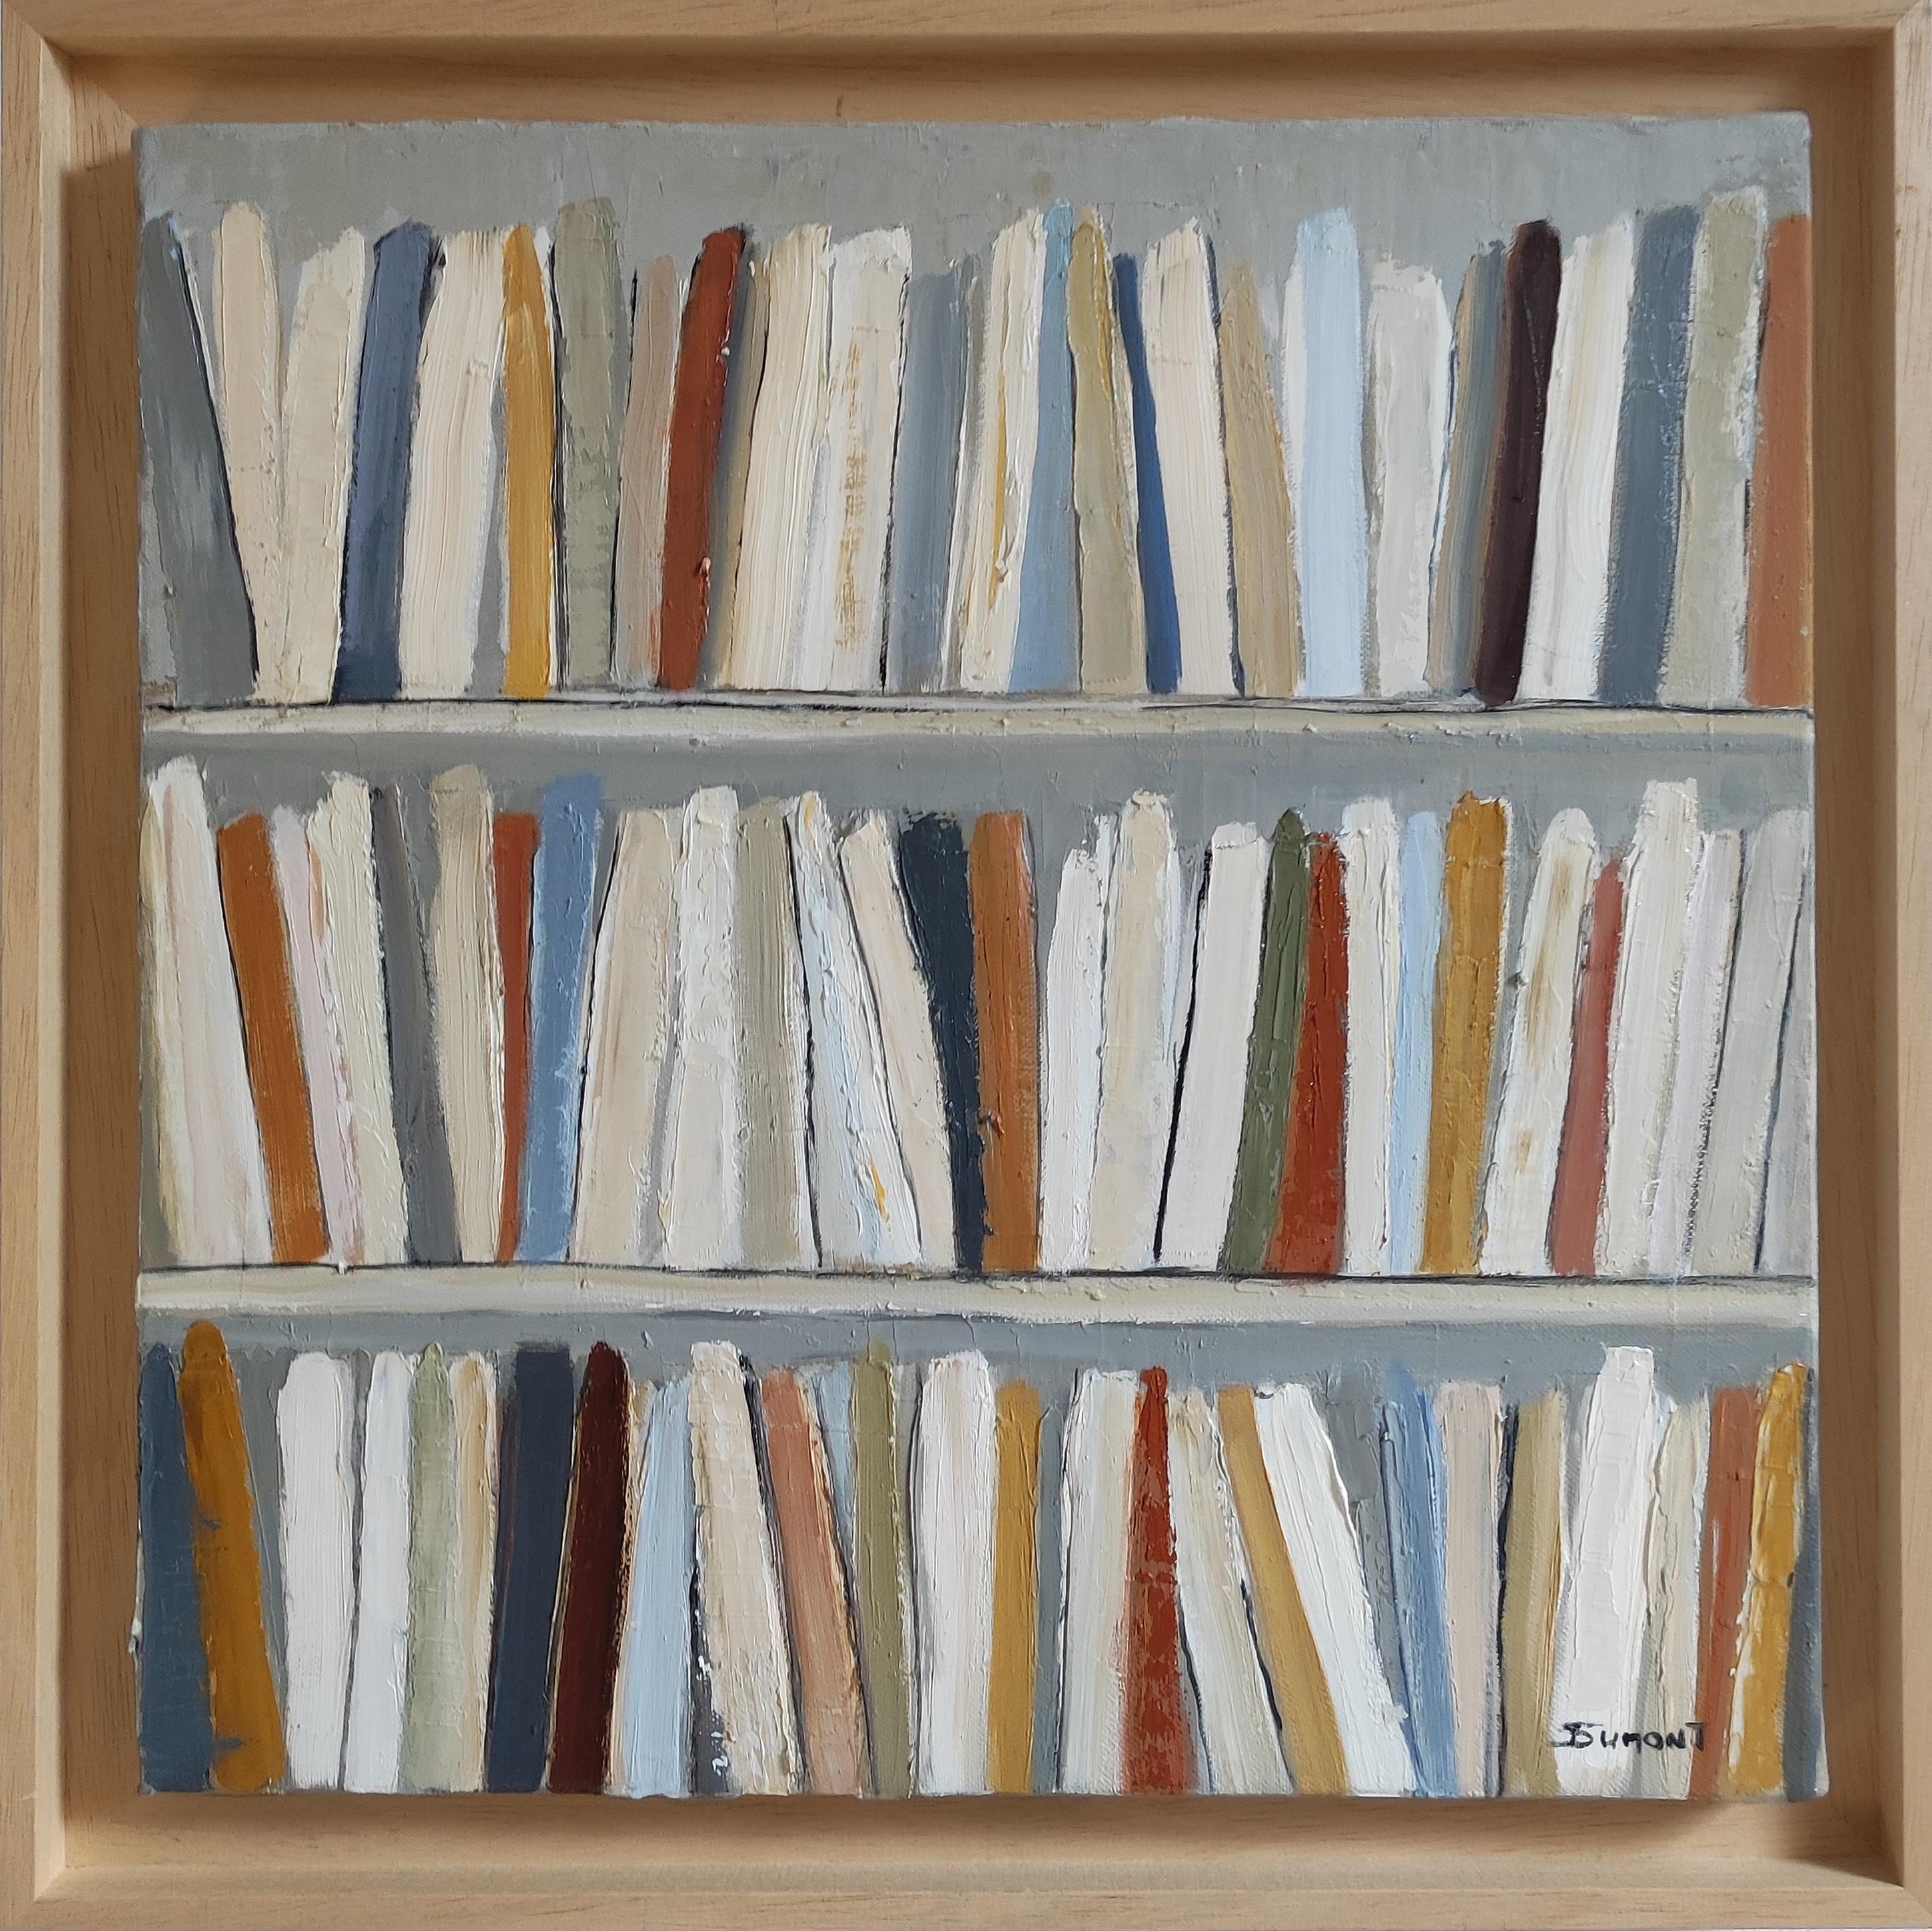 Interior Painting SOPHIE DUMONT - Livres de poche, Bibliothèque abstraite, minimalisme, huile sur toile, Contemporary French